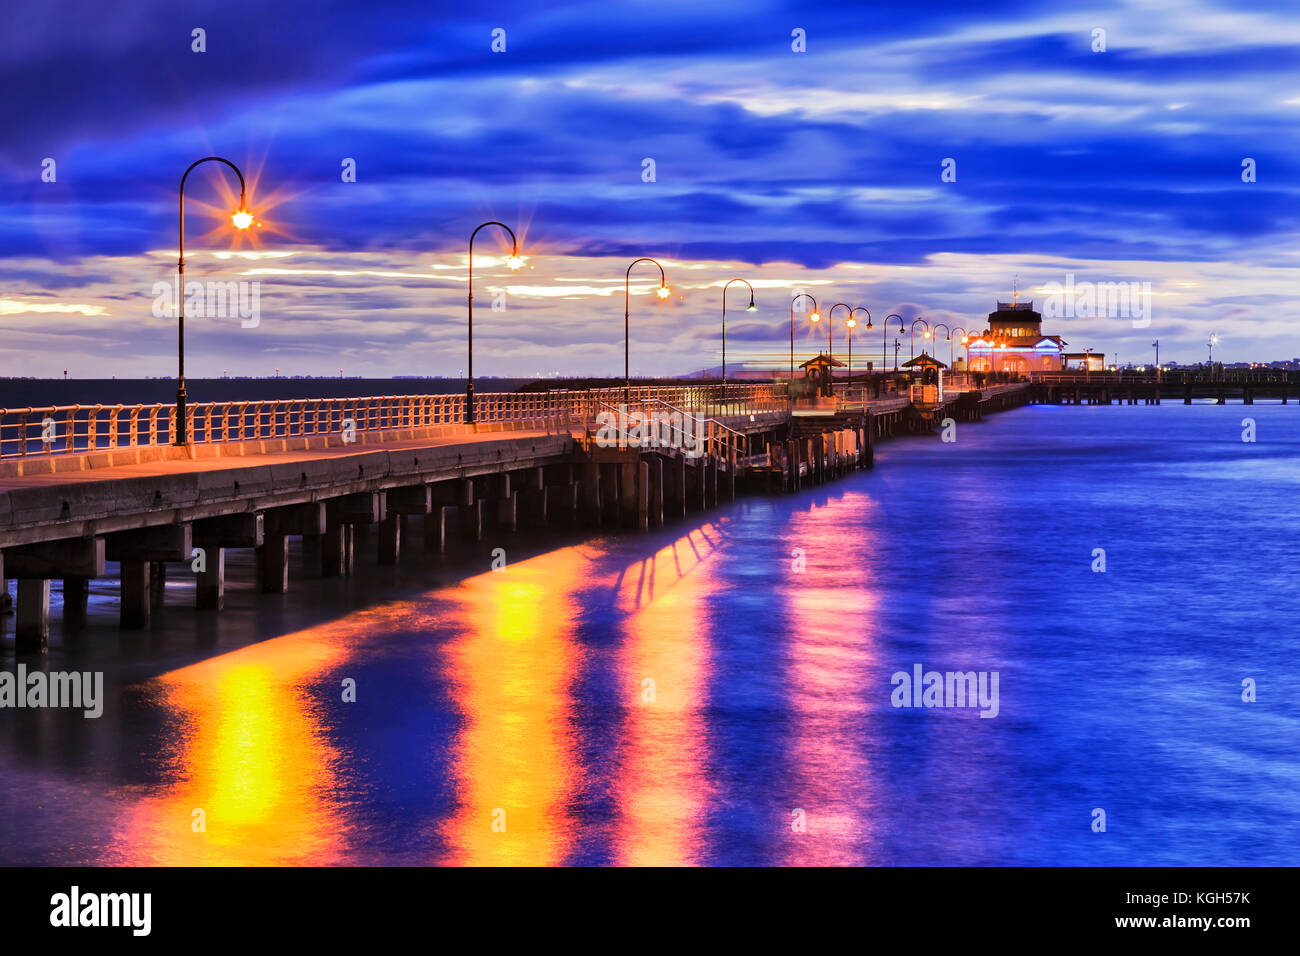 Stürmische Sonnenuntergang am Port Philip Bay um St Kilda Strand historischen Fachwerkhäuser Bootsanleger mit Straße Licht Beleuchtung im blauen Wasser der Bucht zu reflektieren. Melbourne Stockfoto